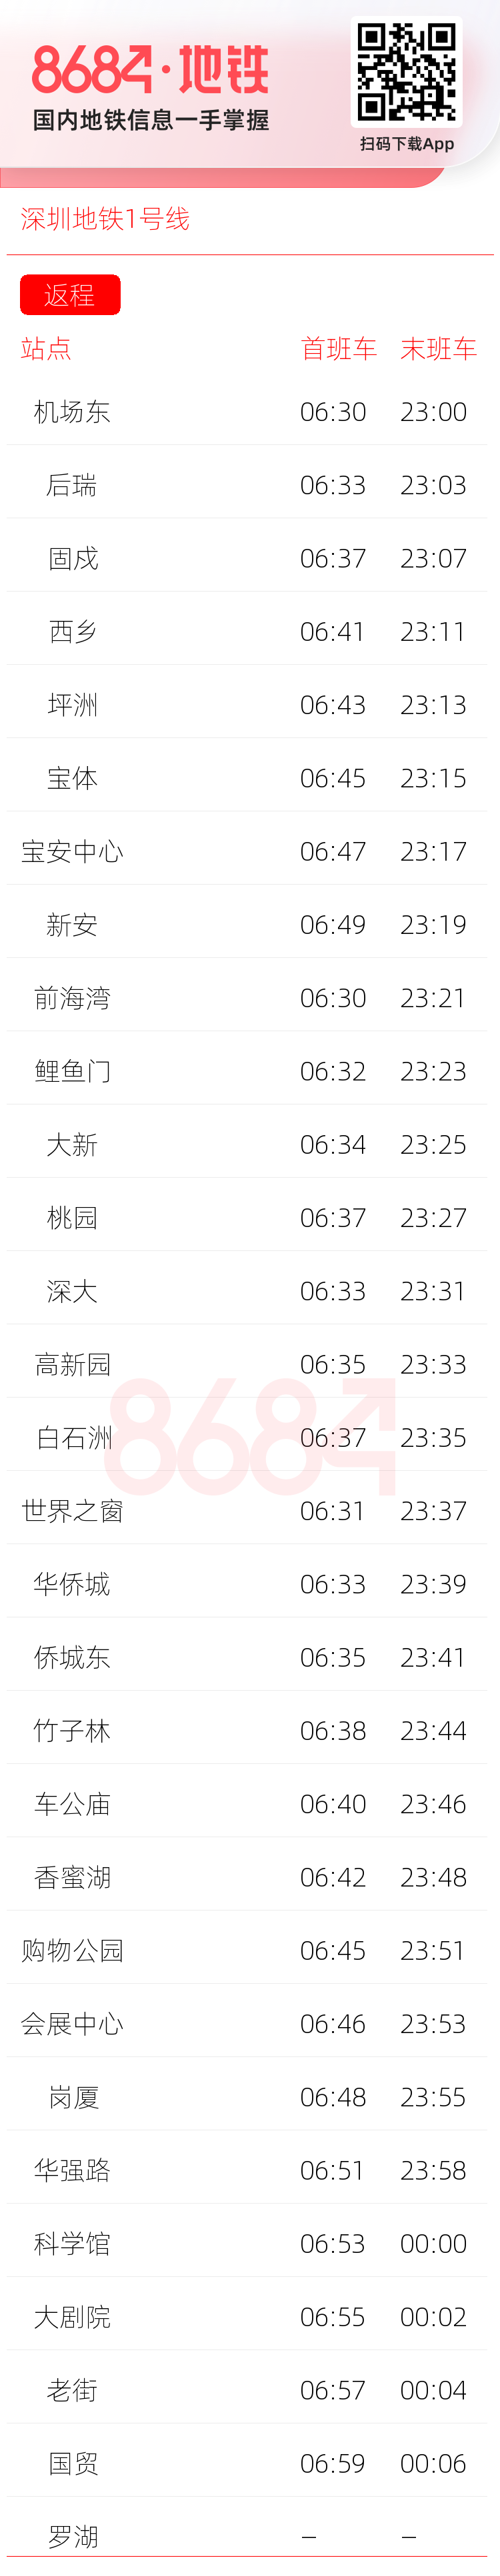 深圳地铁1号线运营时间表